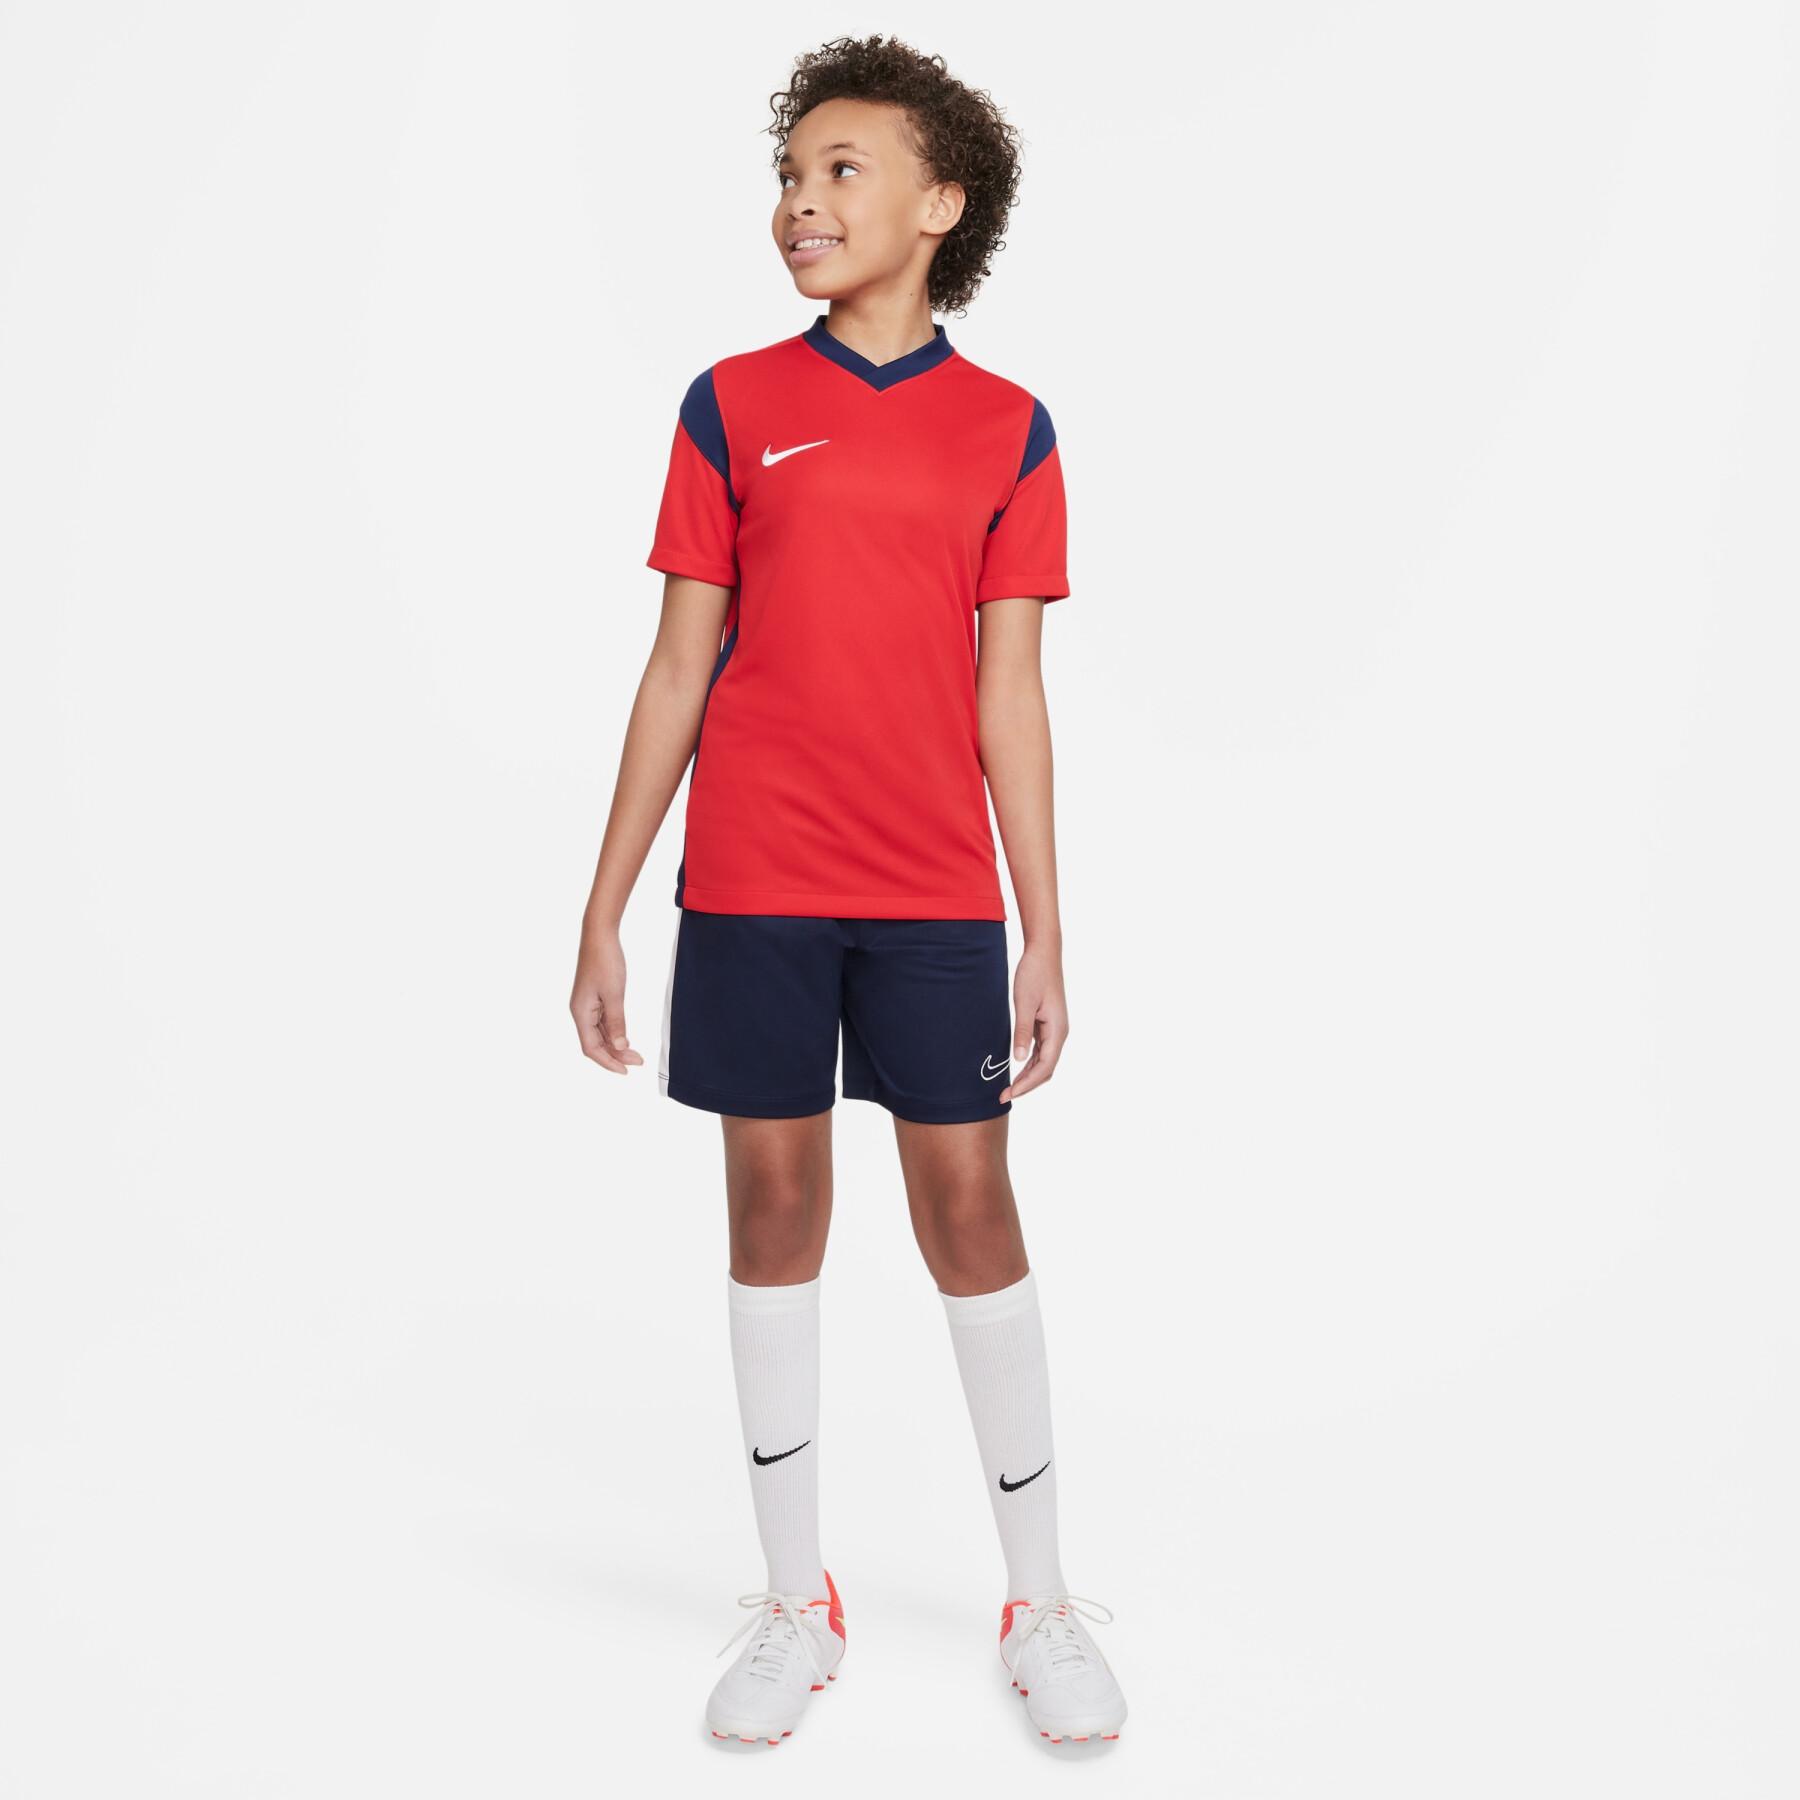 Children's jersey Nike Dynamic Fit Derby III